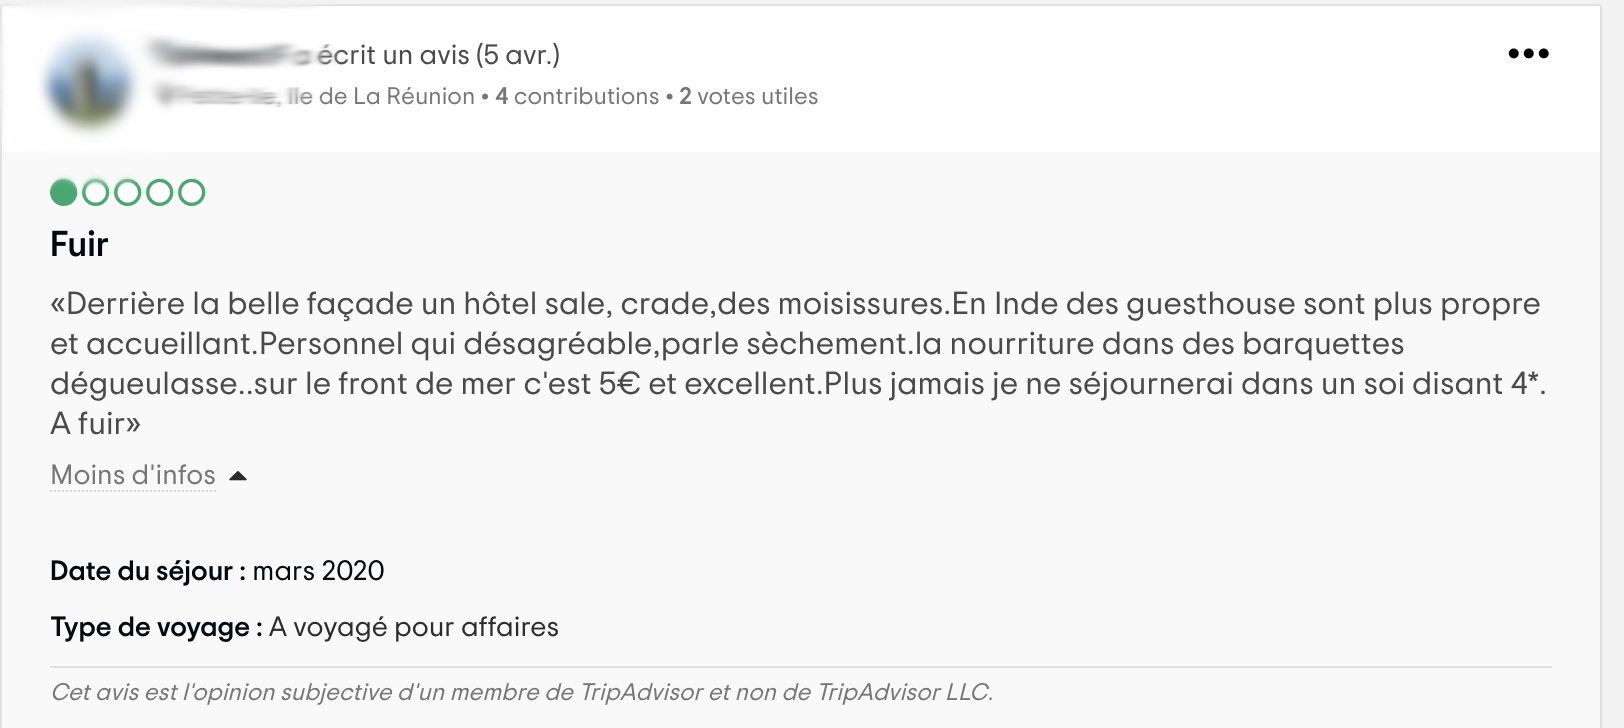 Quatorzaine: Avant de quitter l’hôtel, ils publient des avis défavorables sur TripAdvisor